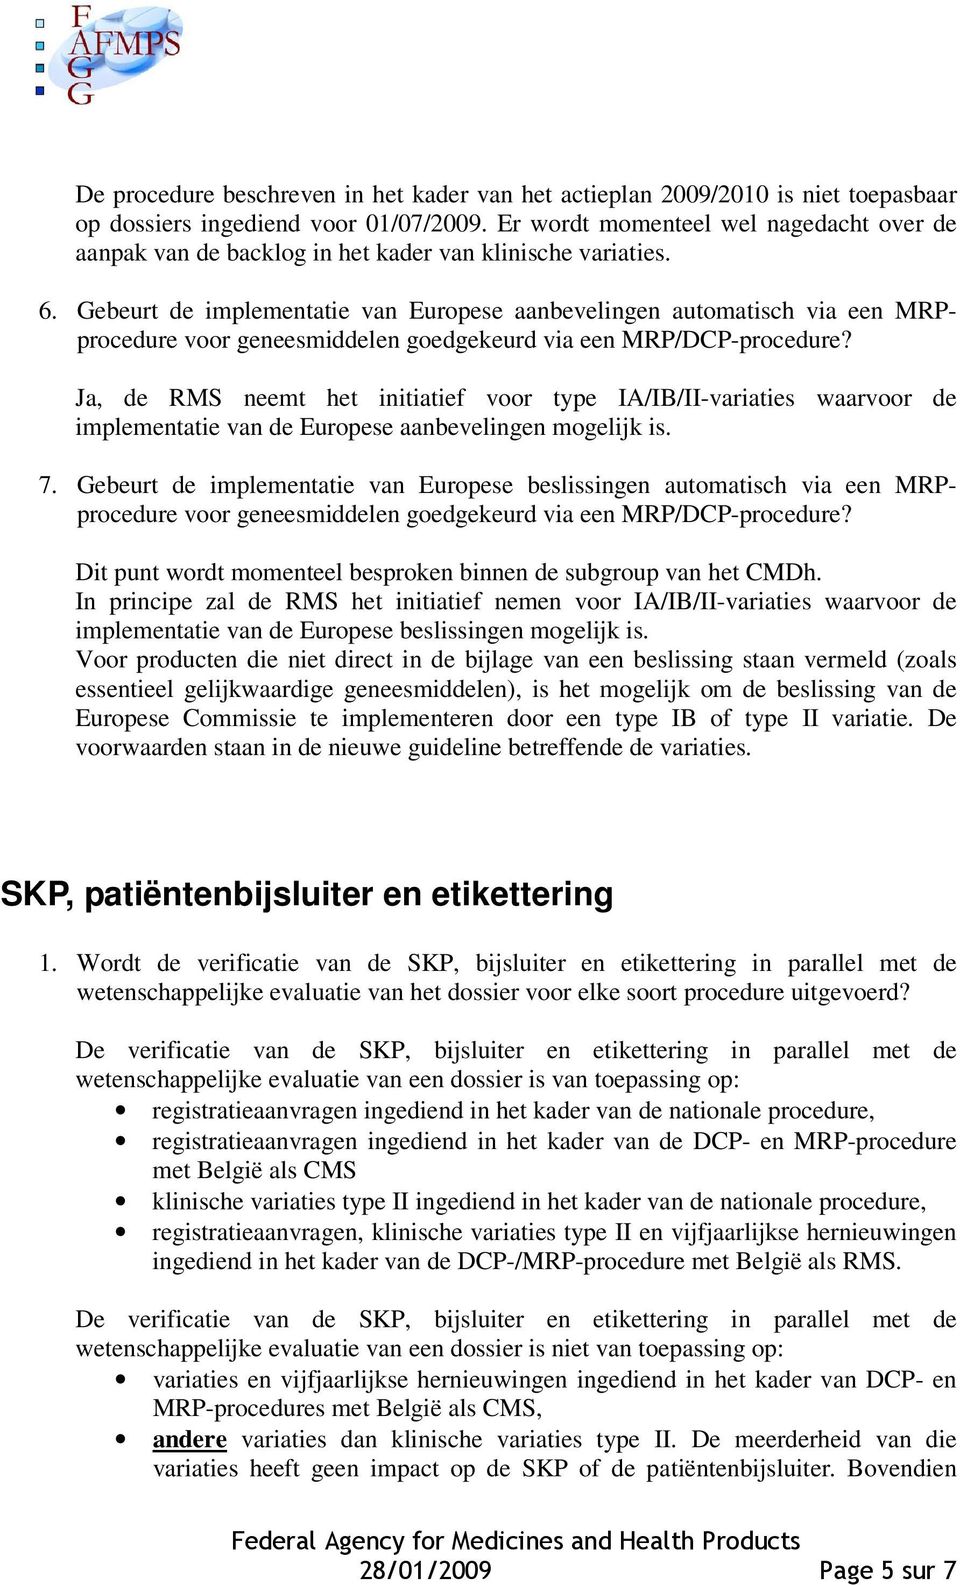 Gebeurt de implementatie van Europese aanbevelingen automatisch via een MRPprocedure voor geneesmiddelen goedgekeurd via een MRP/DCP-procedure?